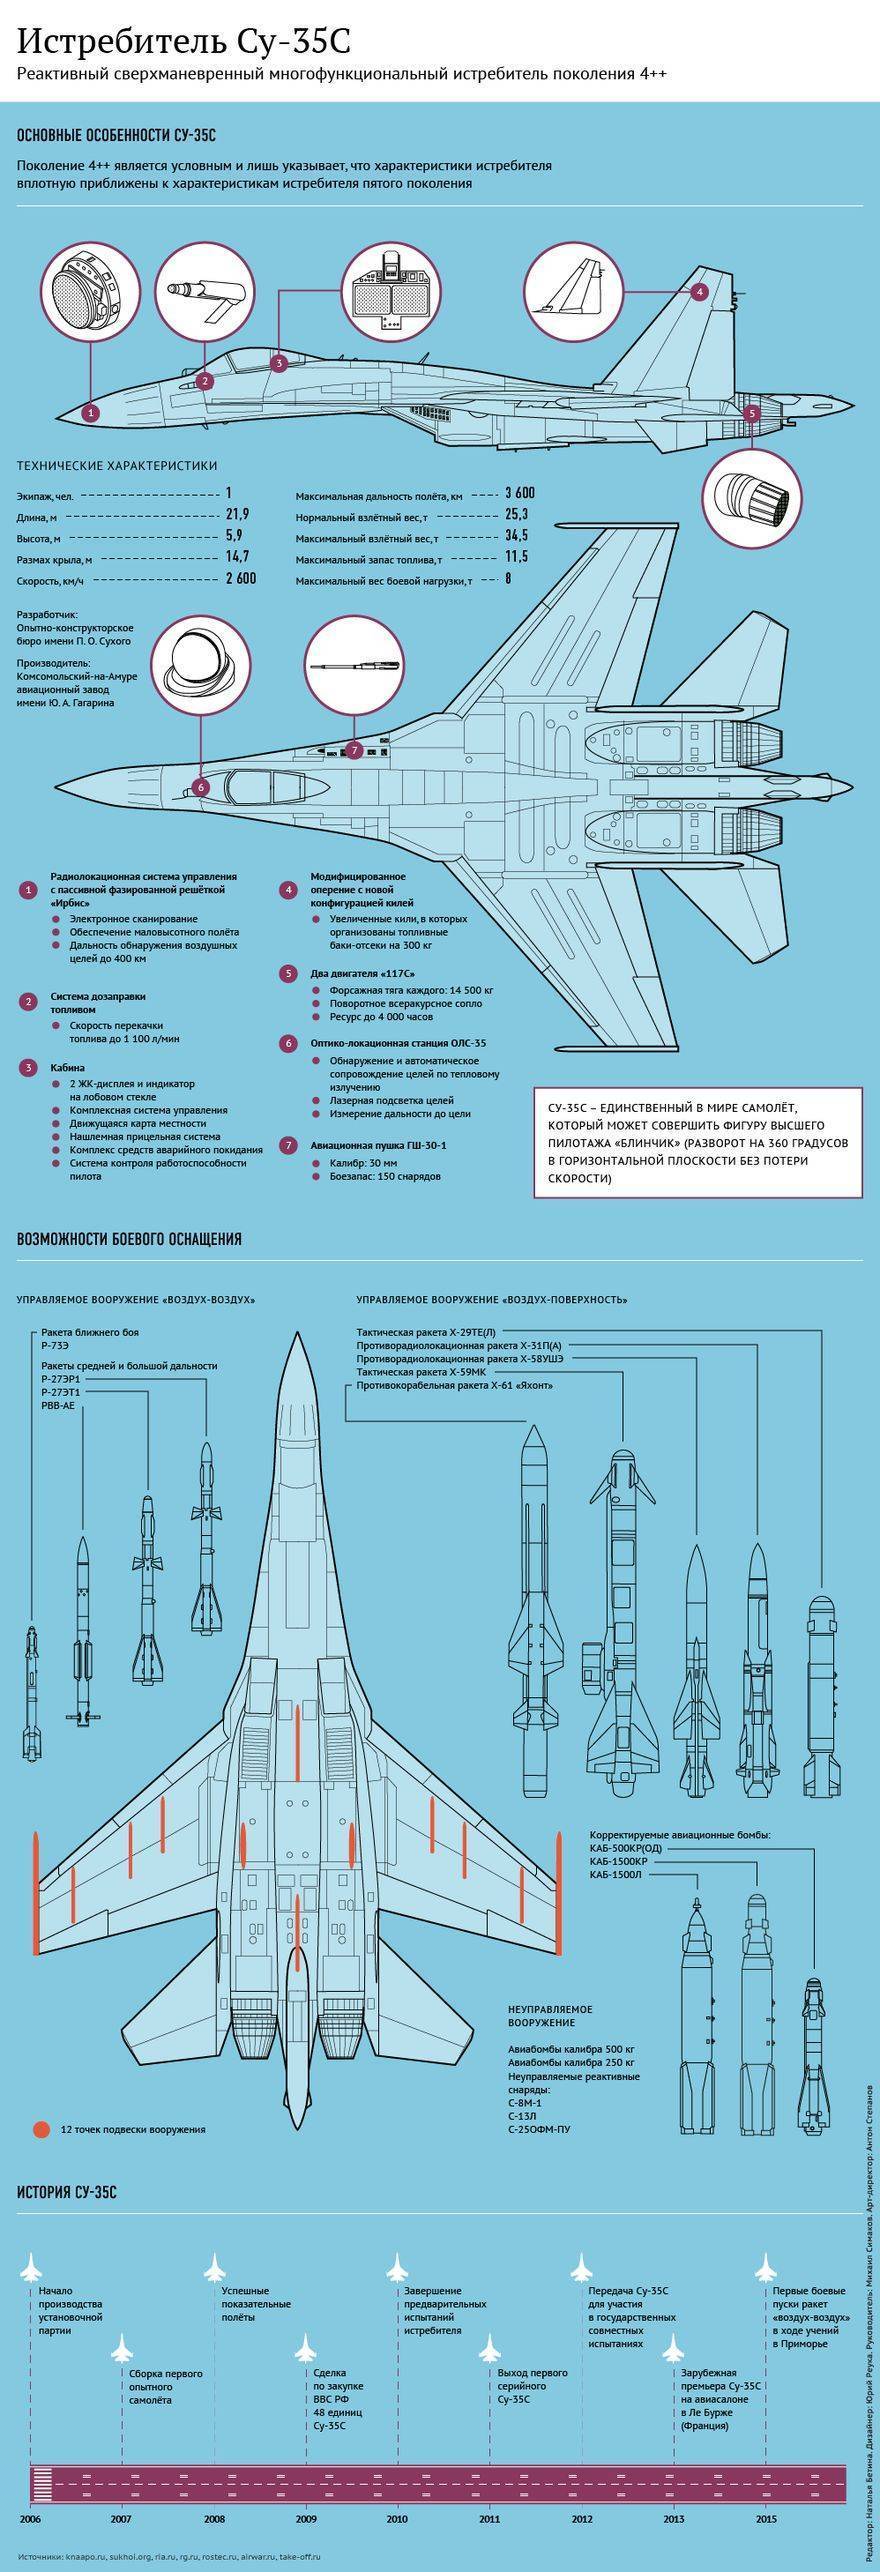 Истребитель су-57. история проекта, испытания, контракты